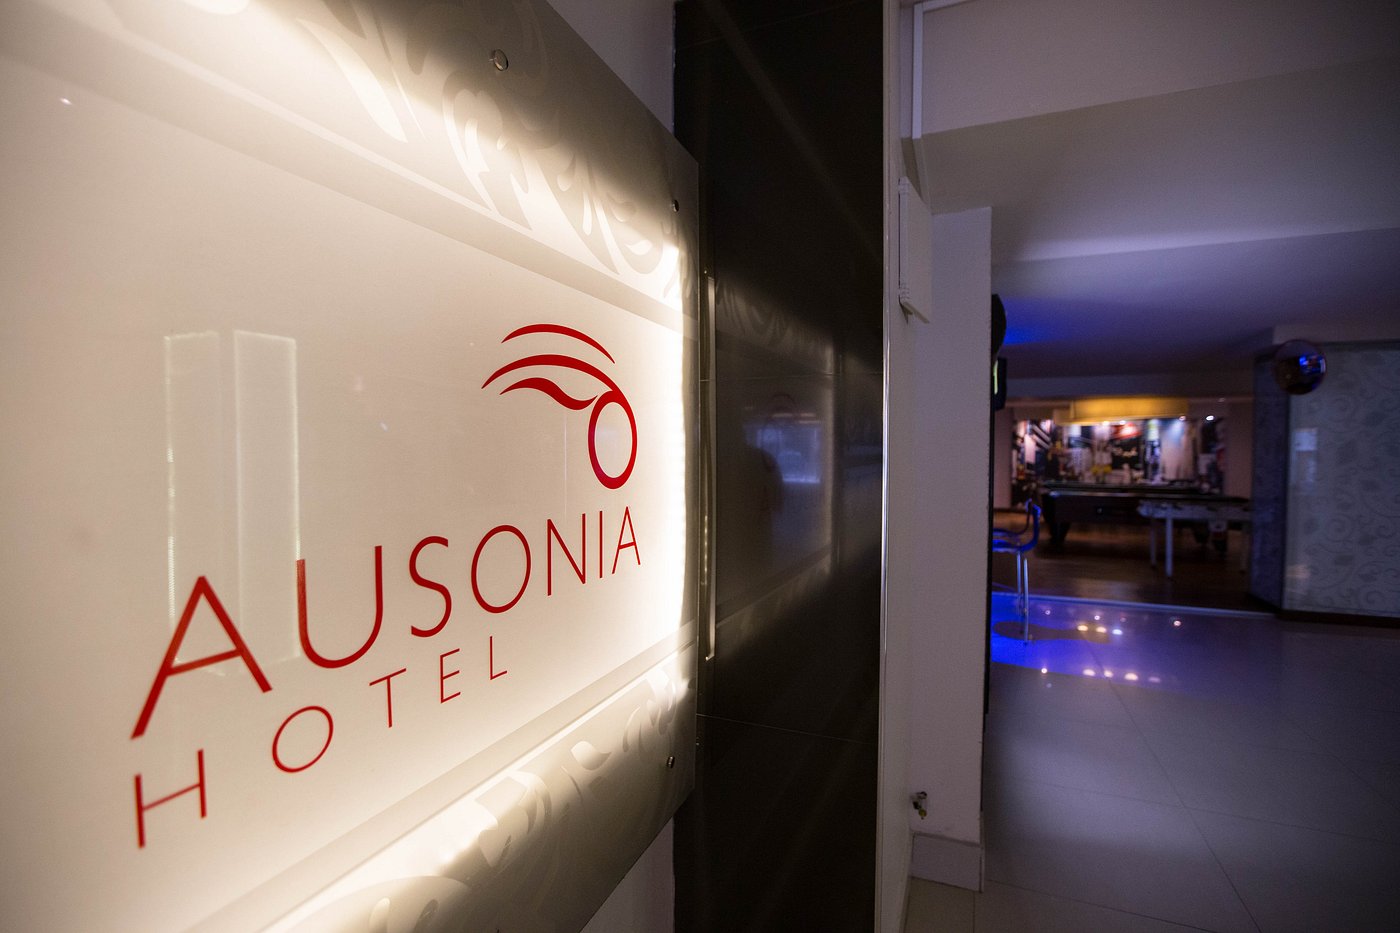 AUSONIA HOTEL (San Carlos de Bariloche) - Specialty Hotel Reviews ...